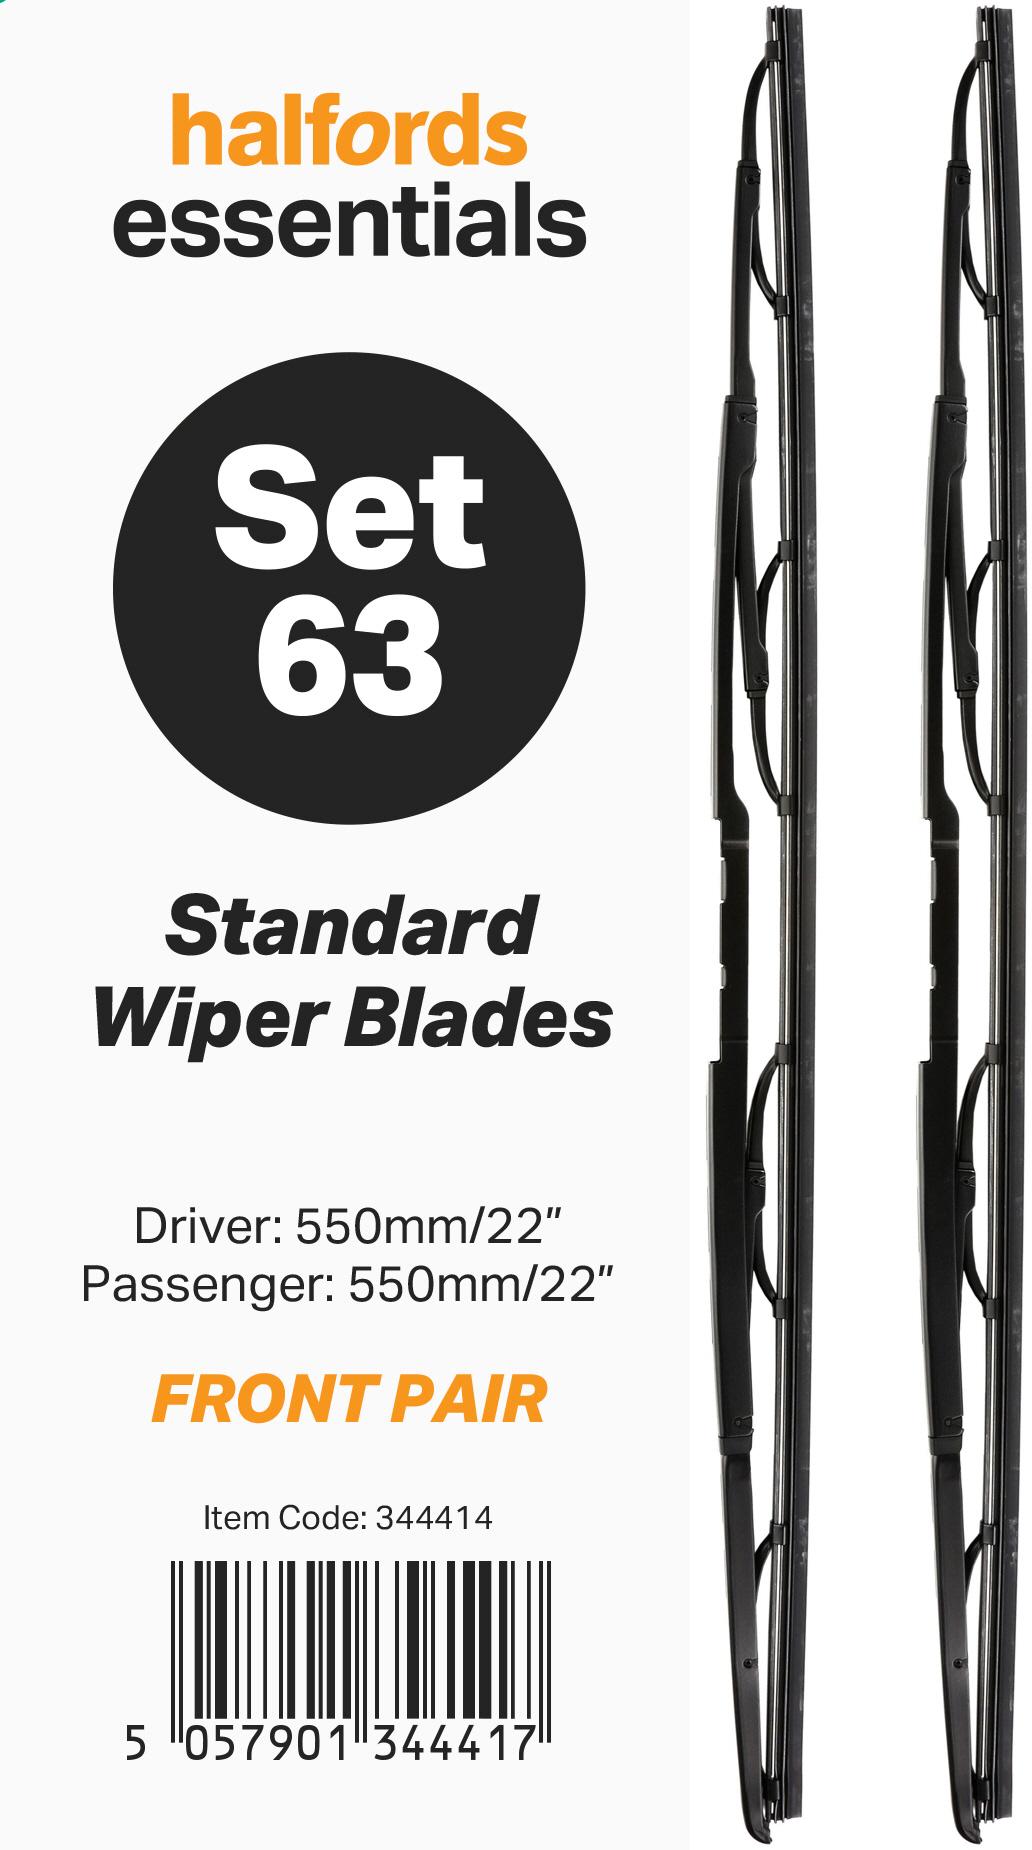 Halfords Essentials Wiper Blades Set 63